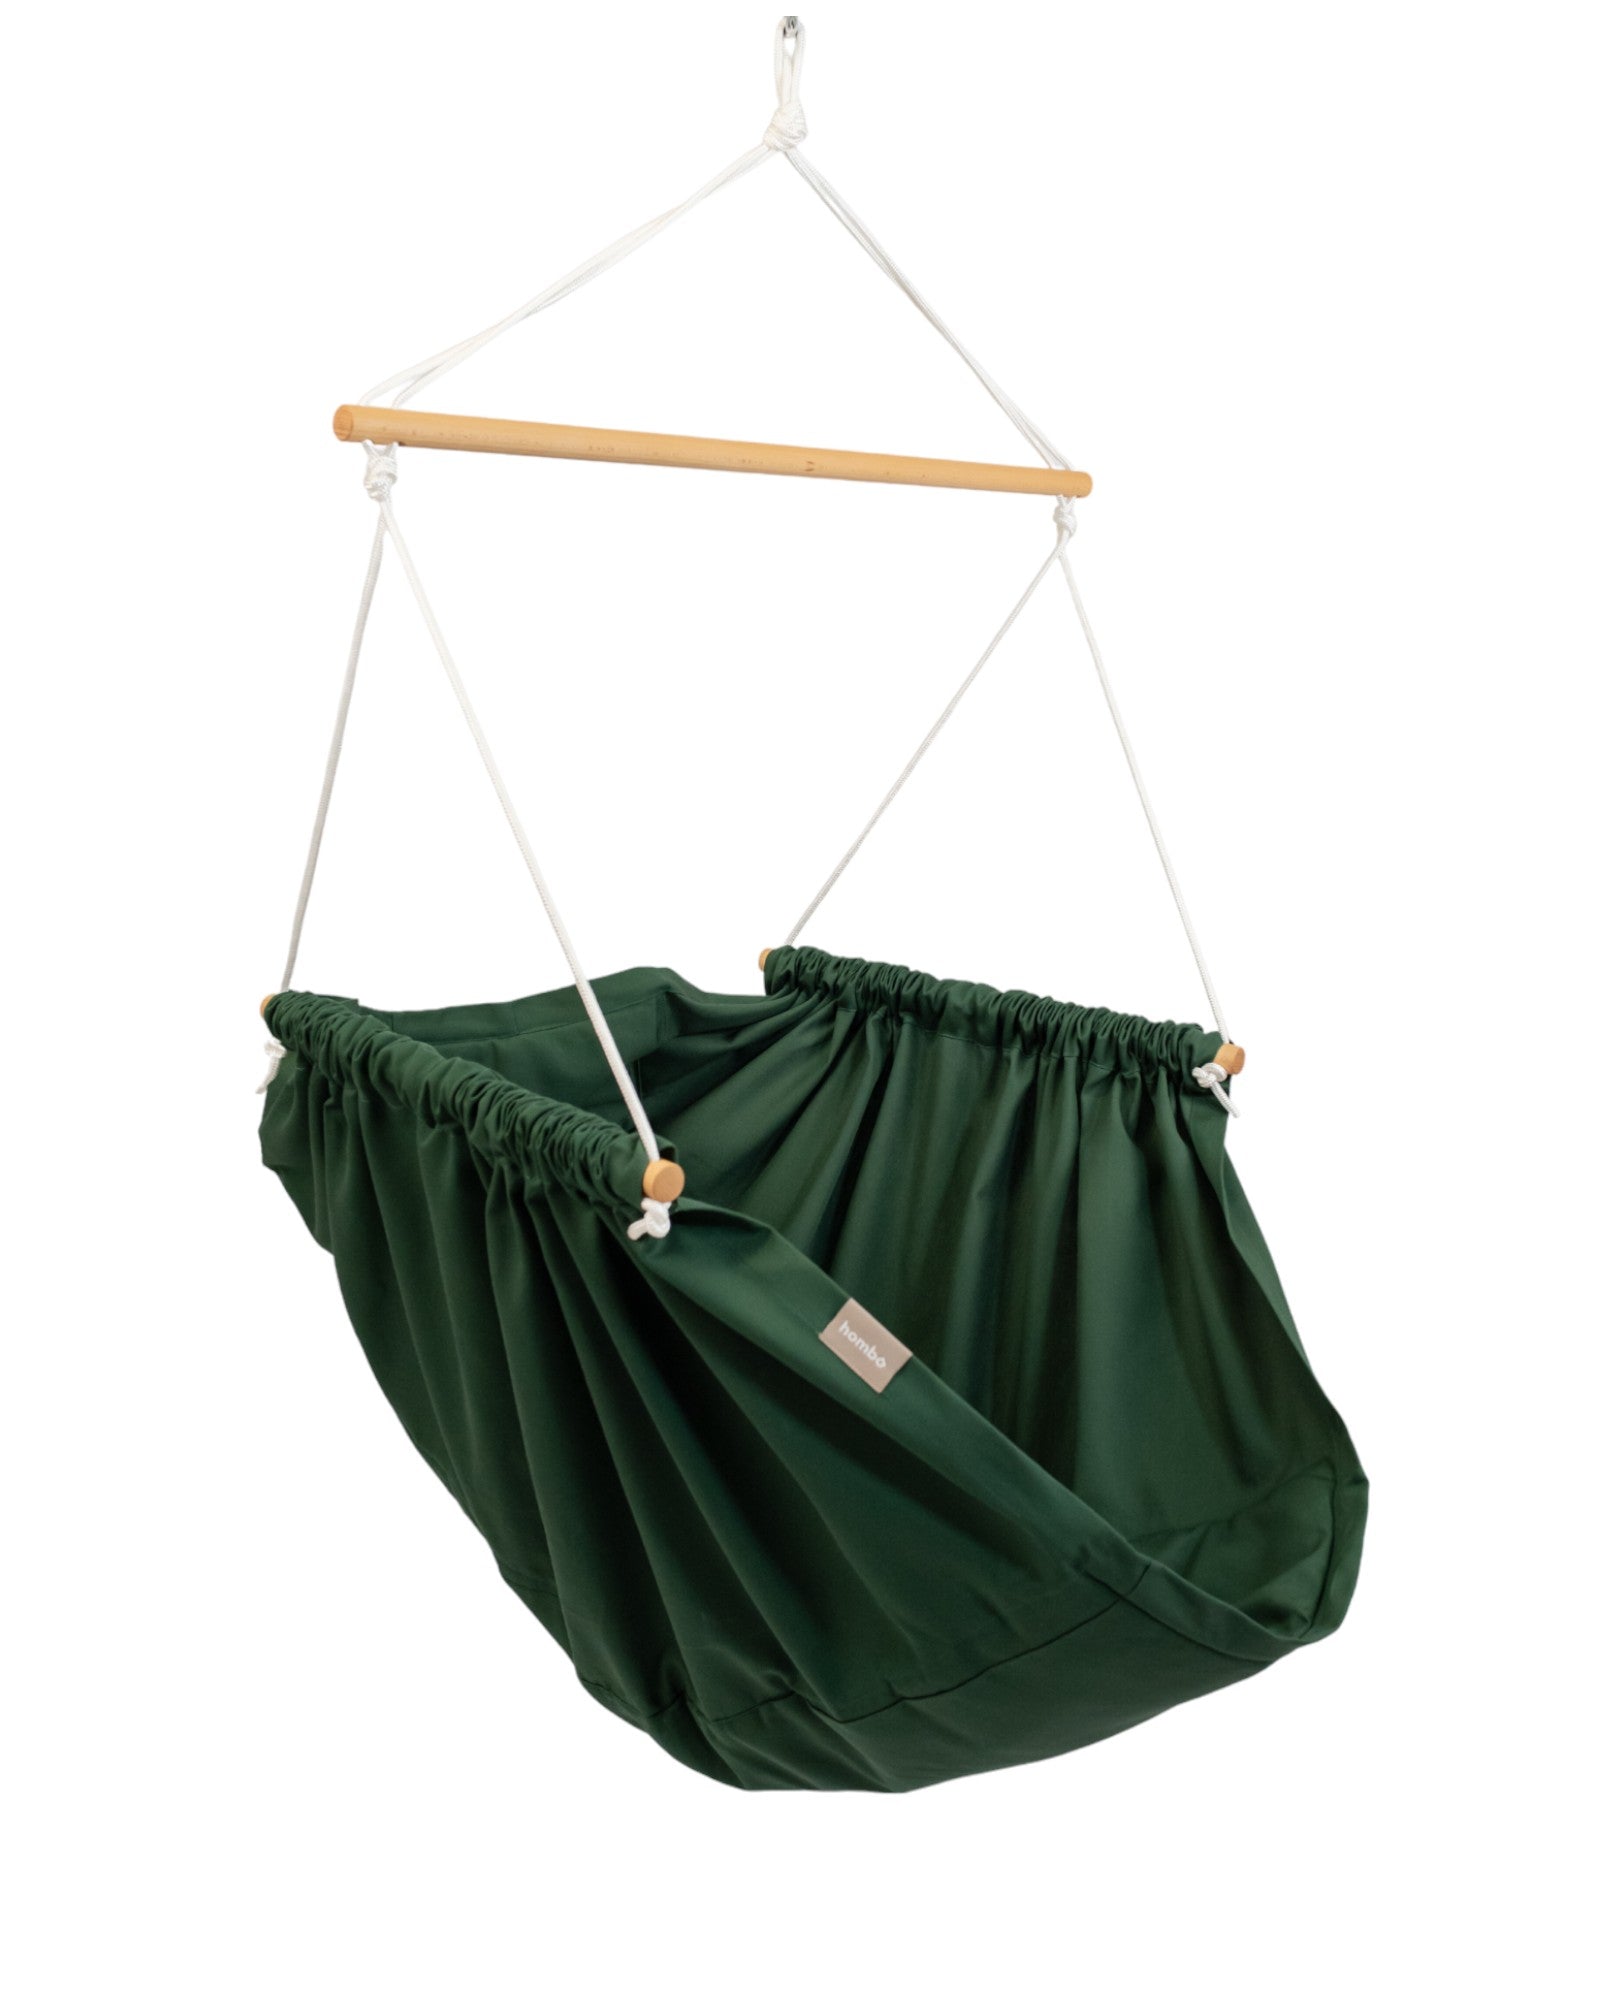 homba® zen mini závěsné křeslo bavlna zelená (2-10 let)